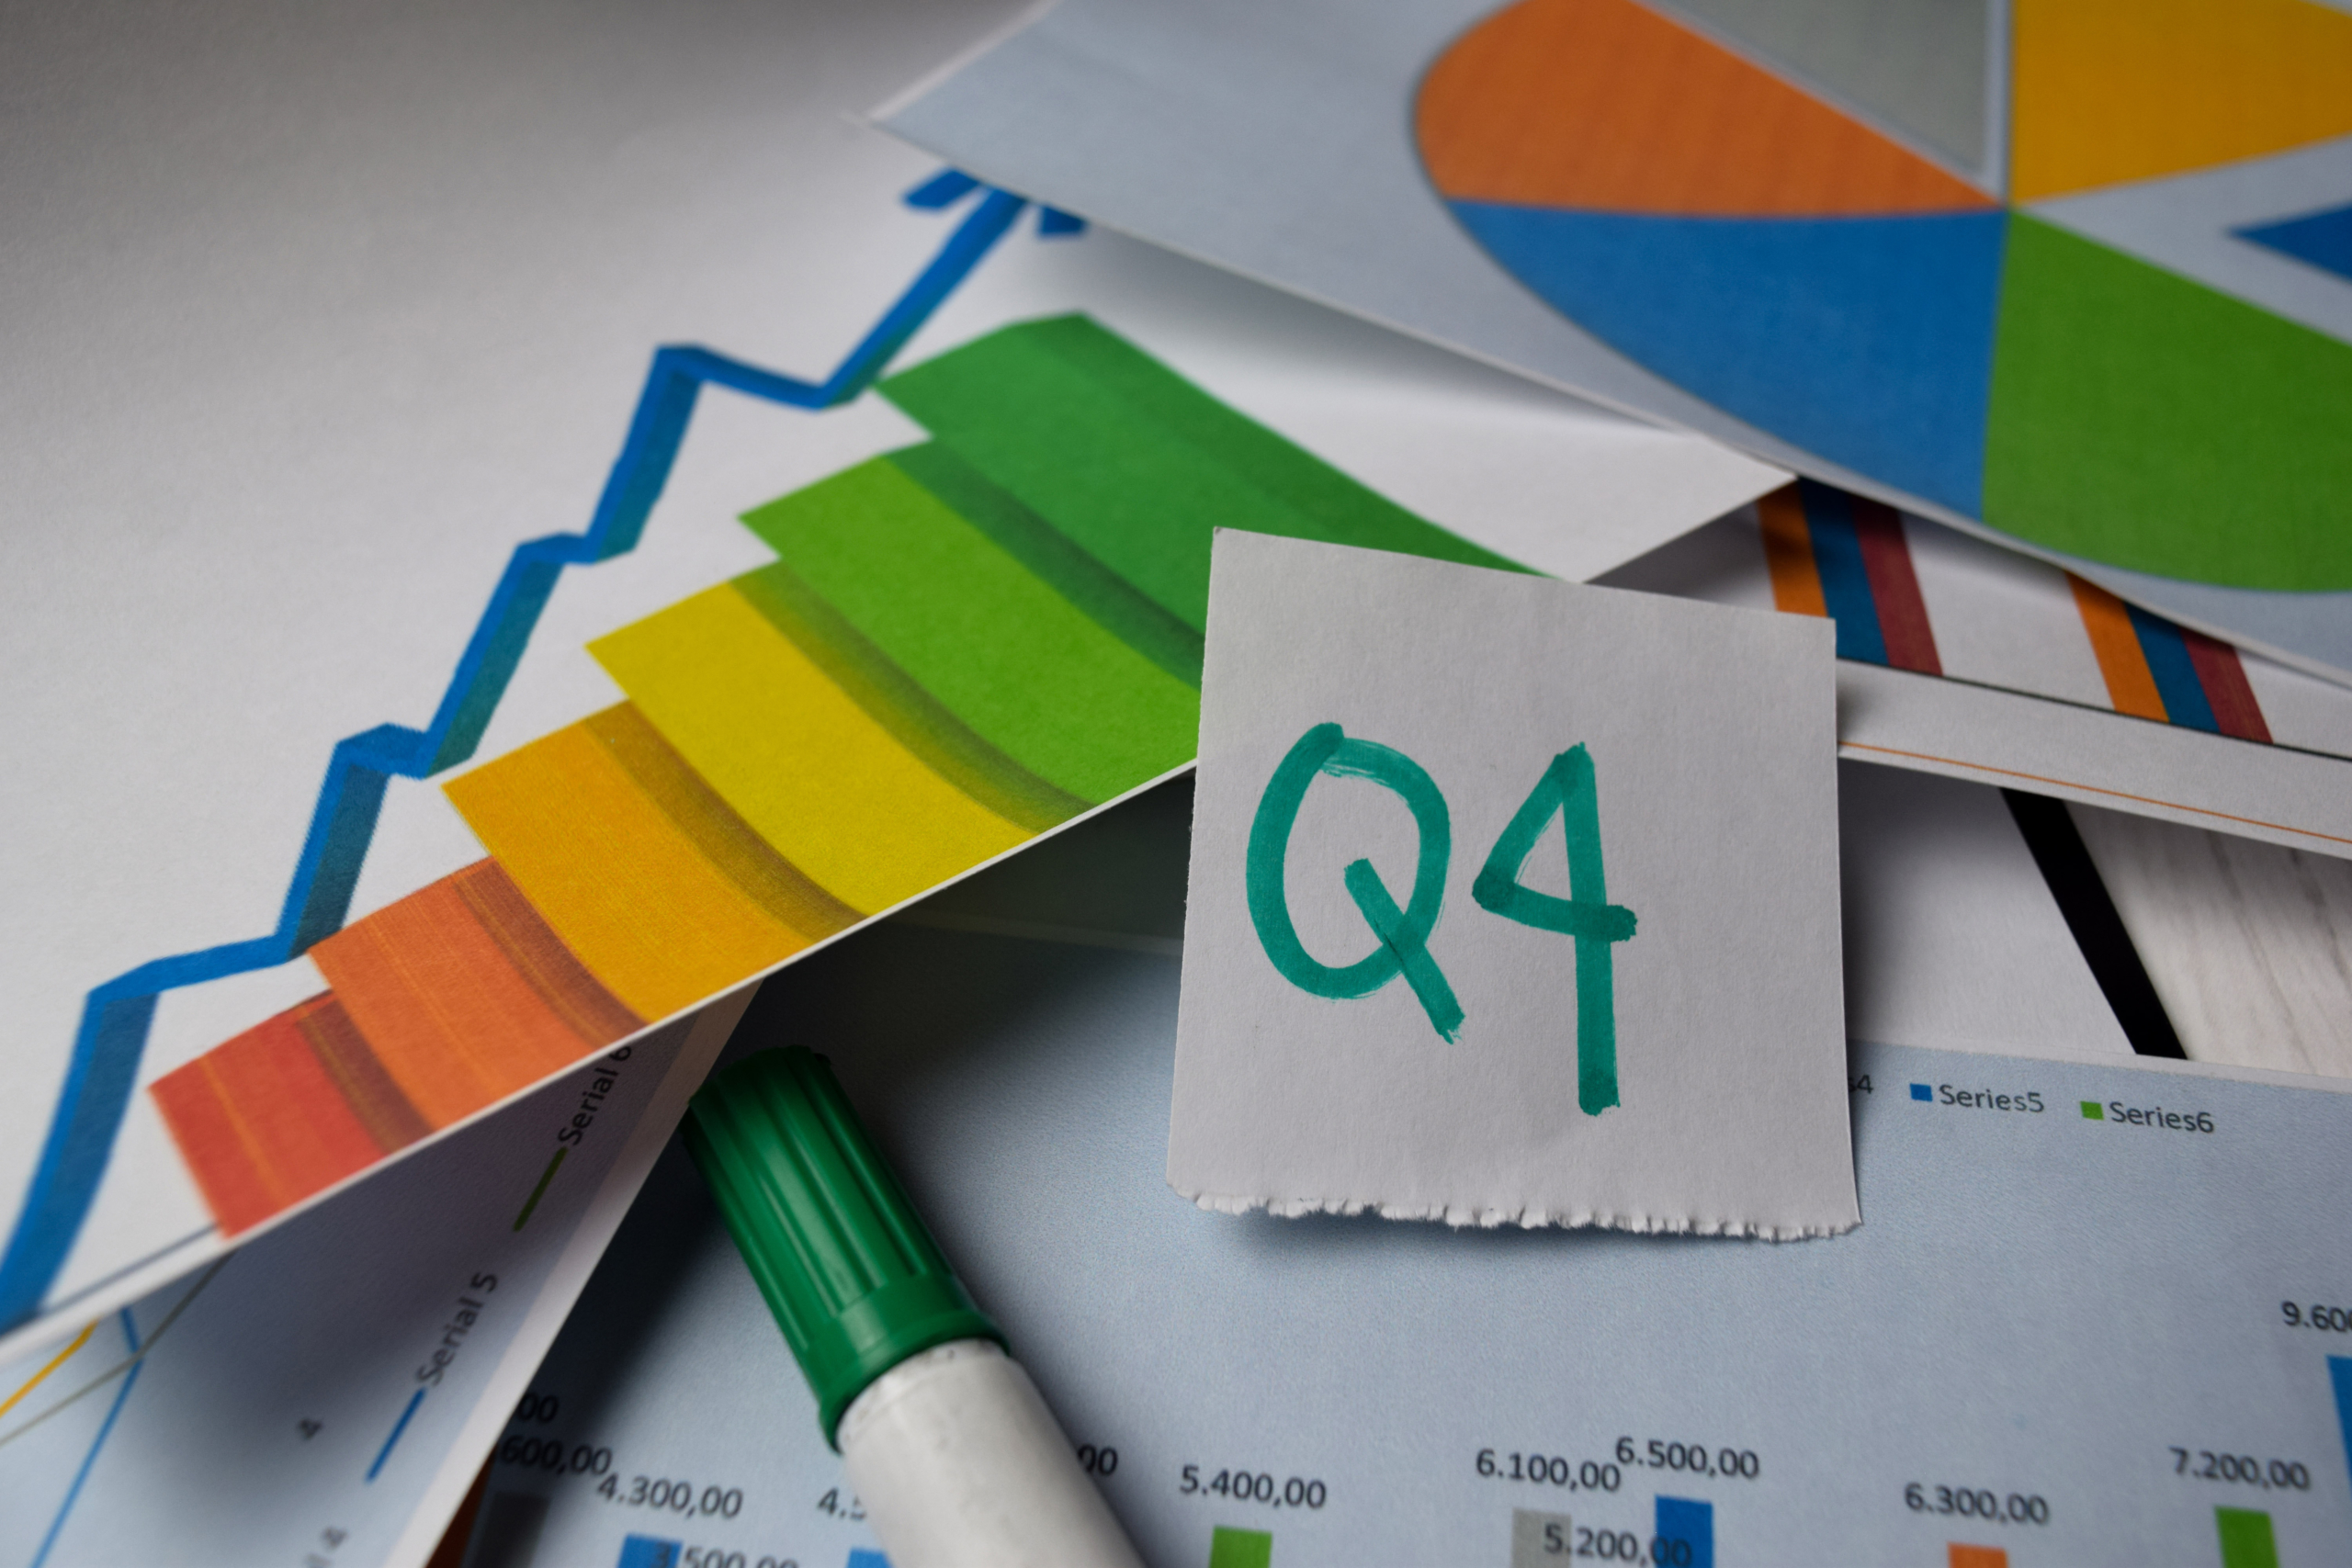 q4 digital marketing strategies